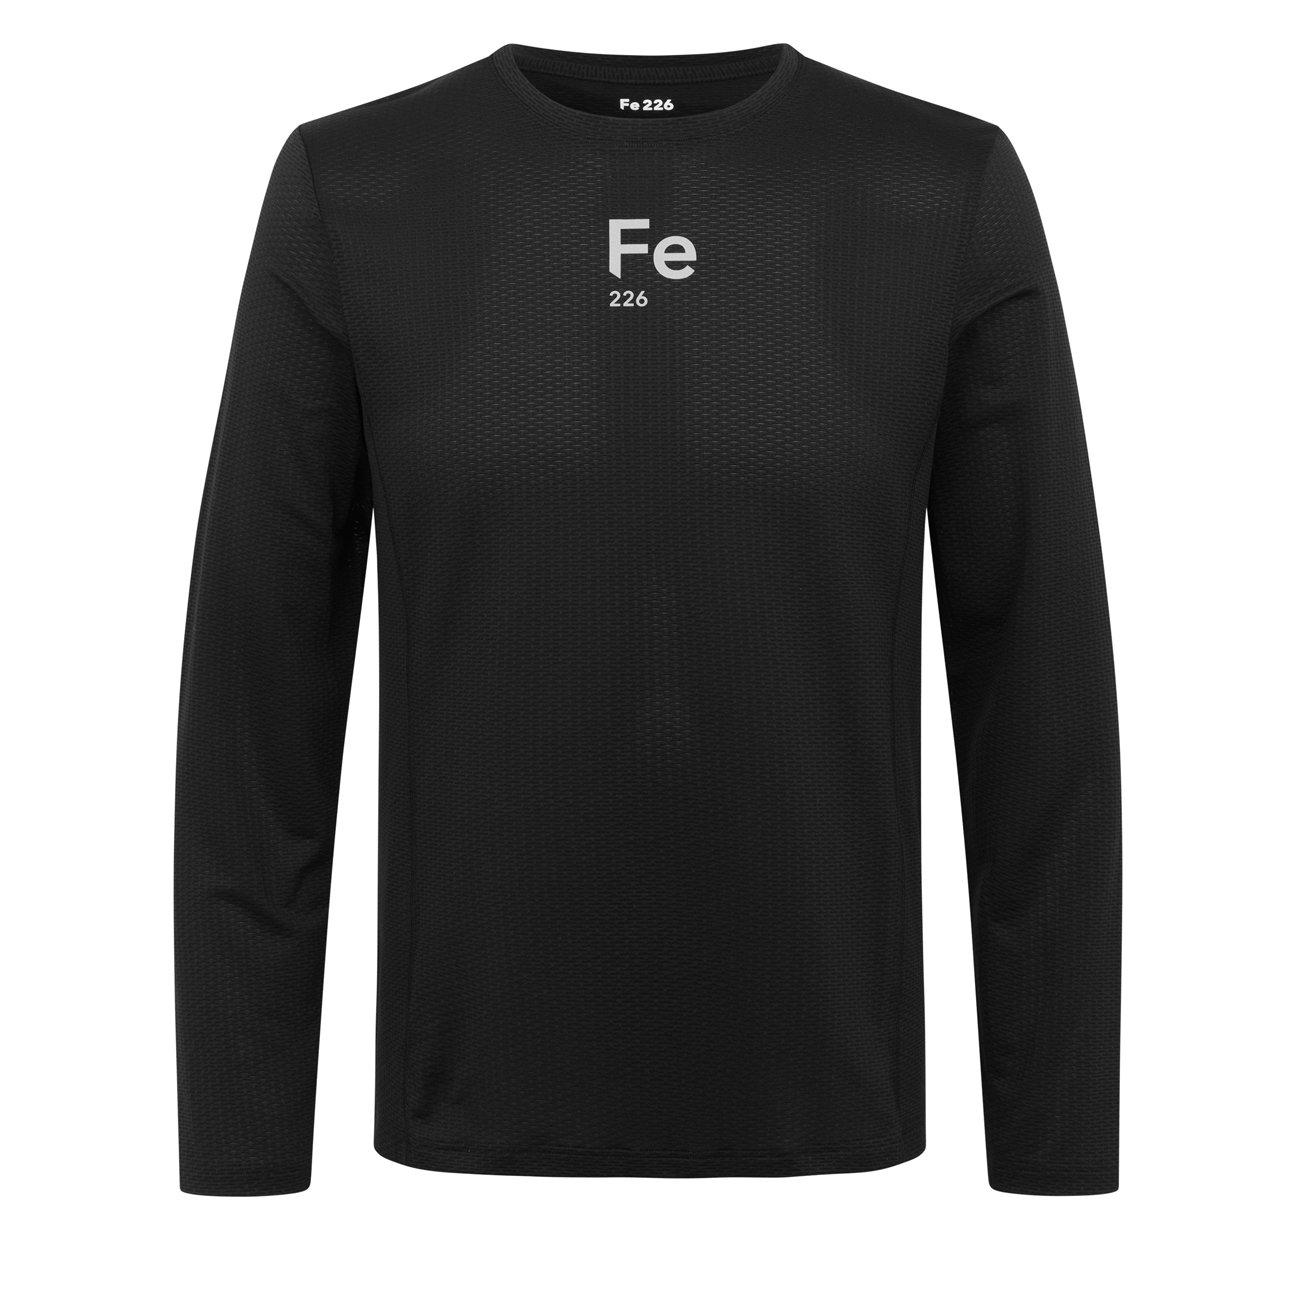 Fe226 TEM DryRun T-Shirt Herren Long Sleeves Black